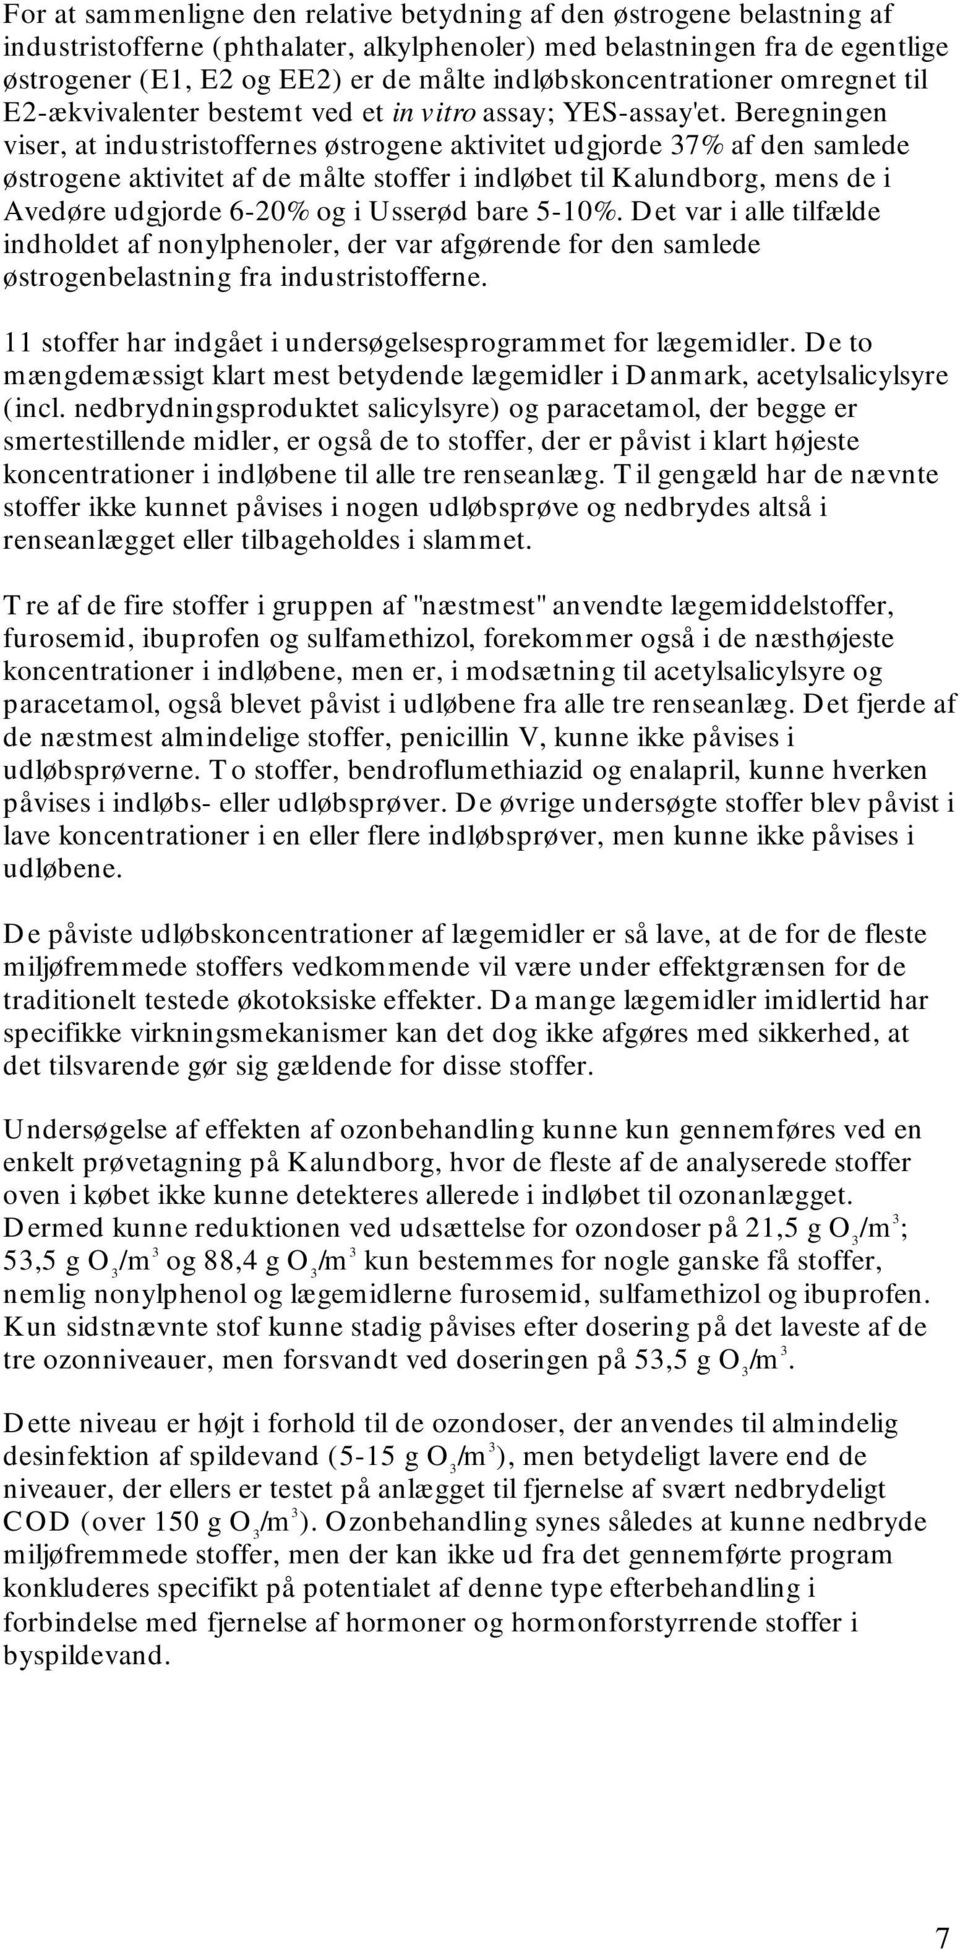 Beregningen viser, at industristoffernes østrogene aktivitet udgjorde 37% af den samlede østrogene aktivitet af de målte stoffer i indløbet til Kalundborg, mens de i Avedøre udgjorde 6-20% og i